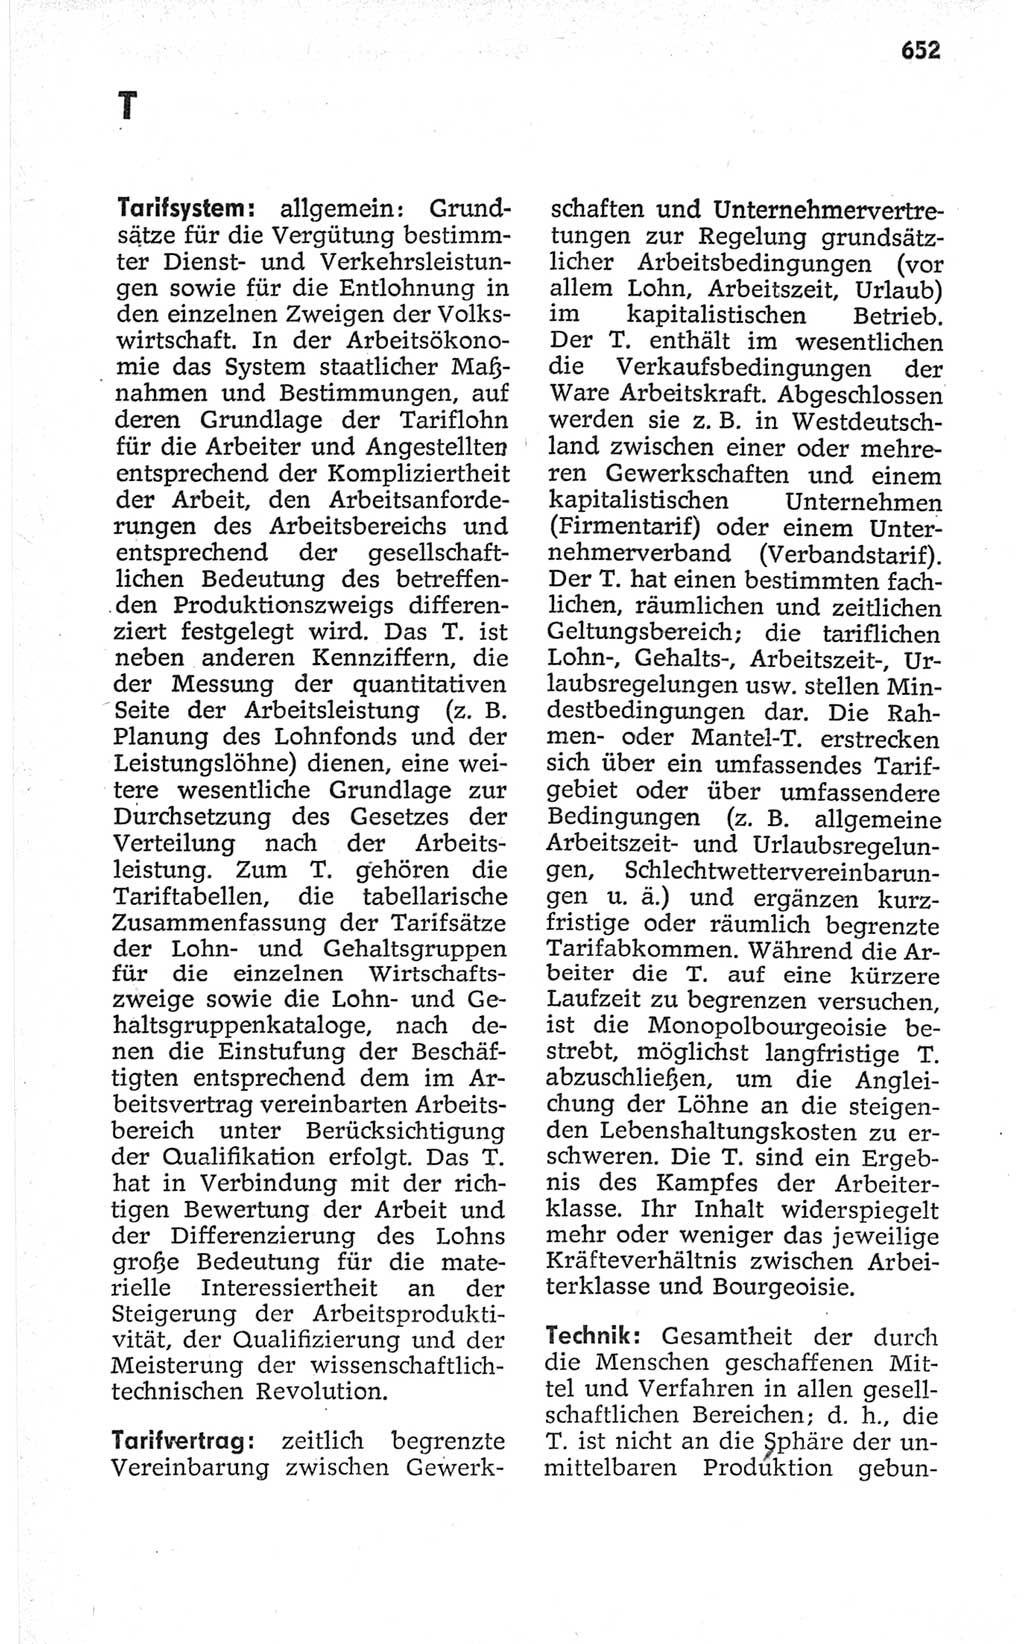 Kleines politisches Wörterbuch [Deutsche Demokratische Republik (DDR)] 1967, Seite 652 (Kl. pol. Wb. DDR 1967, S. 652)